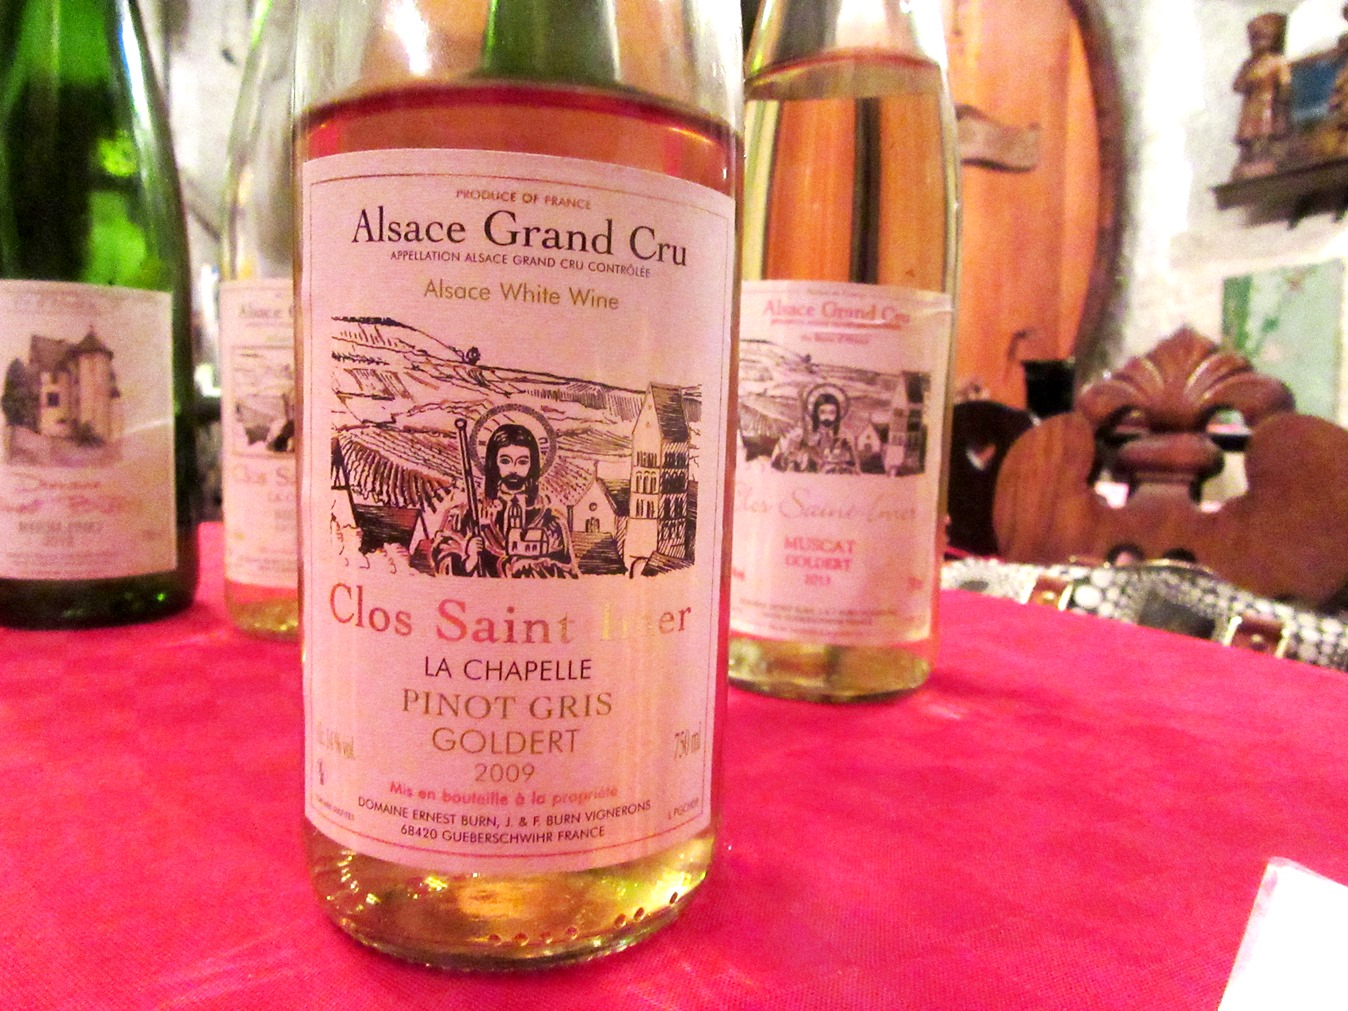 Domaine Ernest Burn, Clos Saint Imer La Chapelle Goldert Pinot Gris 2009, Alsace Grand Cru, France, Wine Casual